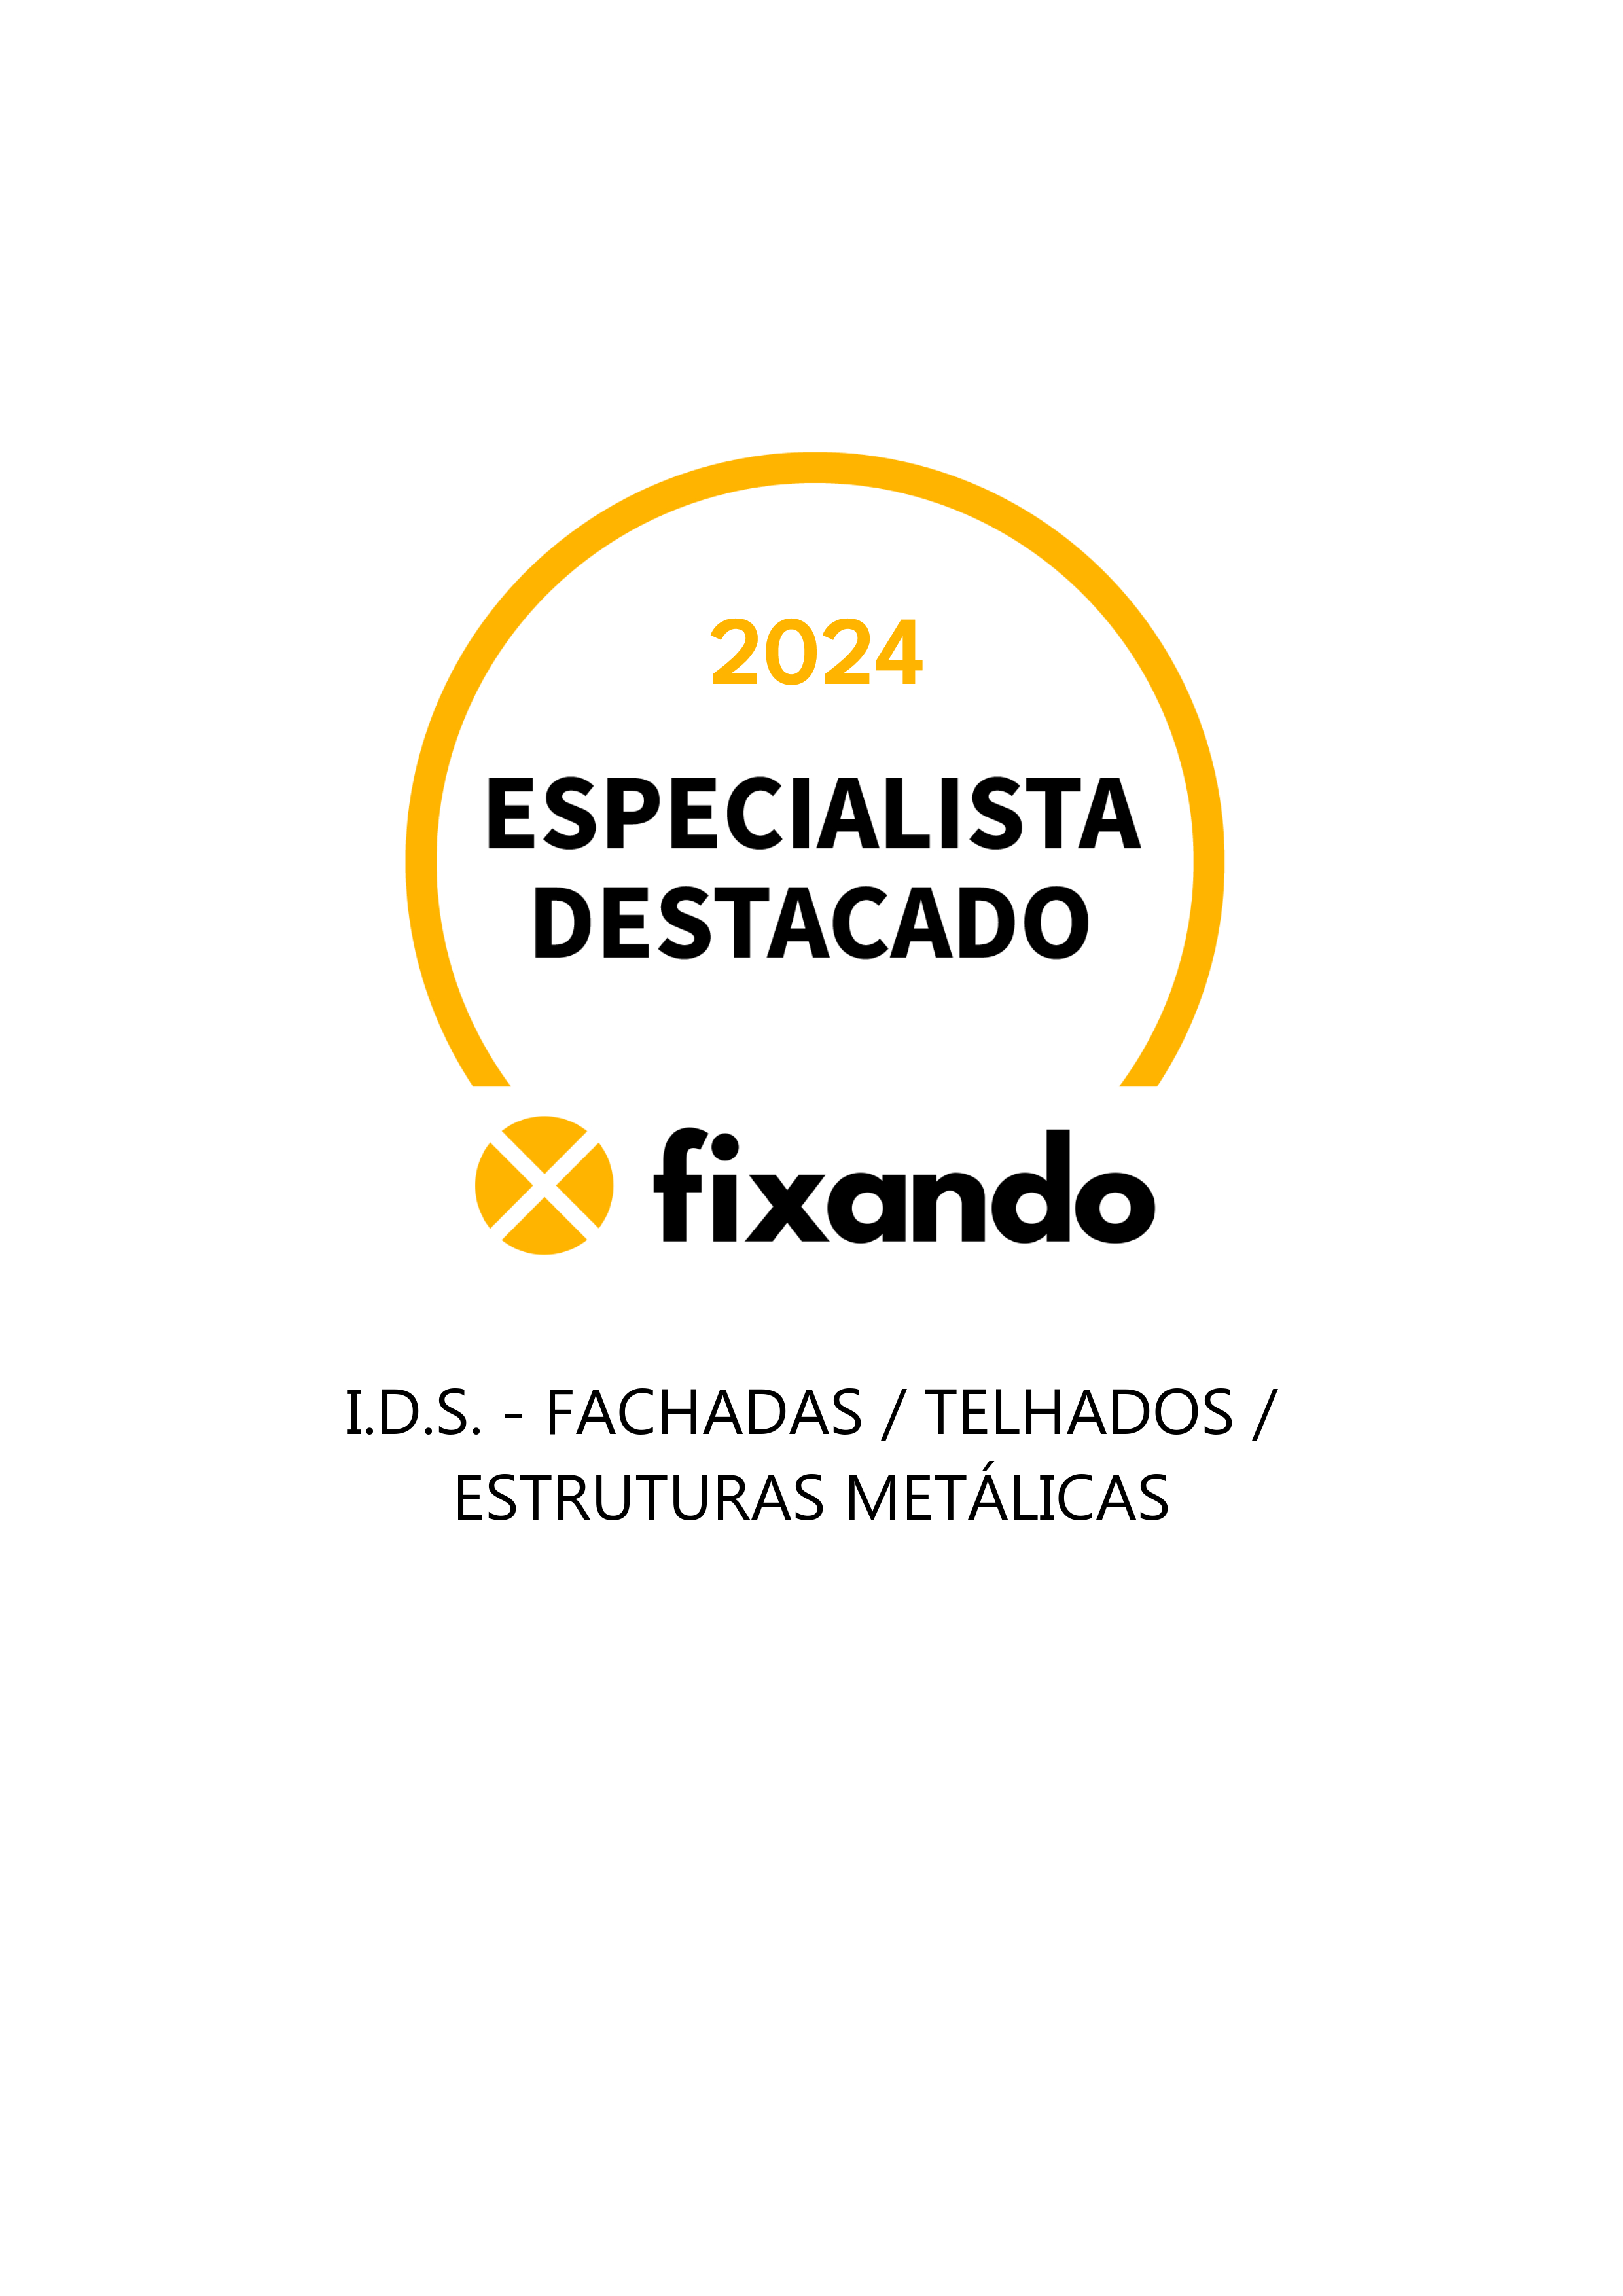 I.D.S. - FACHADAS / TELHADOS / ESTRUTURAS METÁLICAS - Sintra - Instalação ou Substituição de Telhado